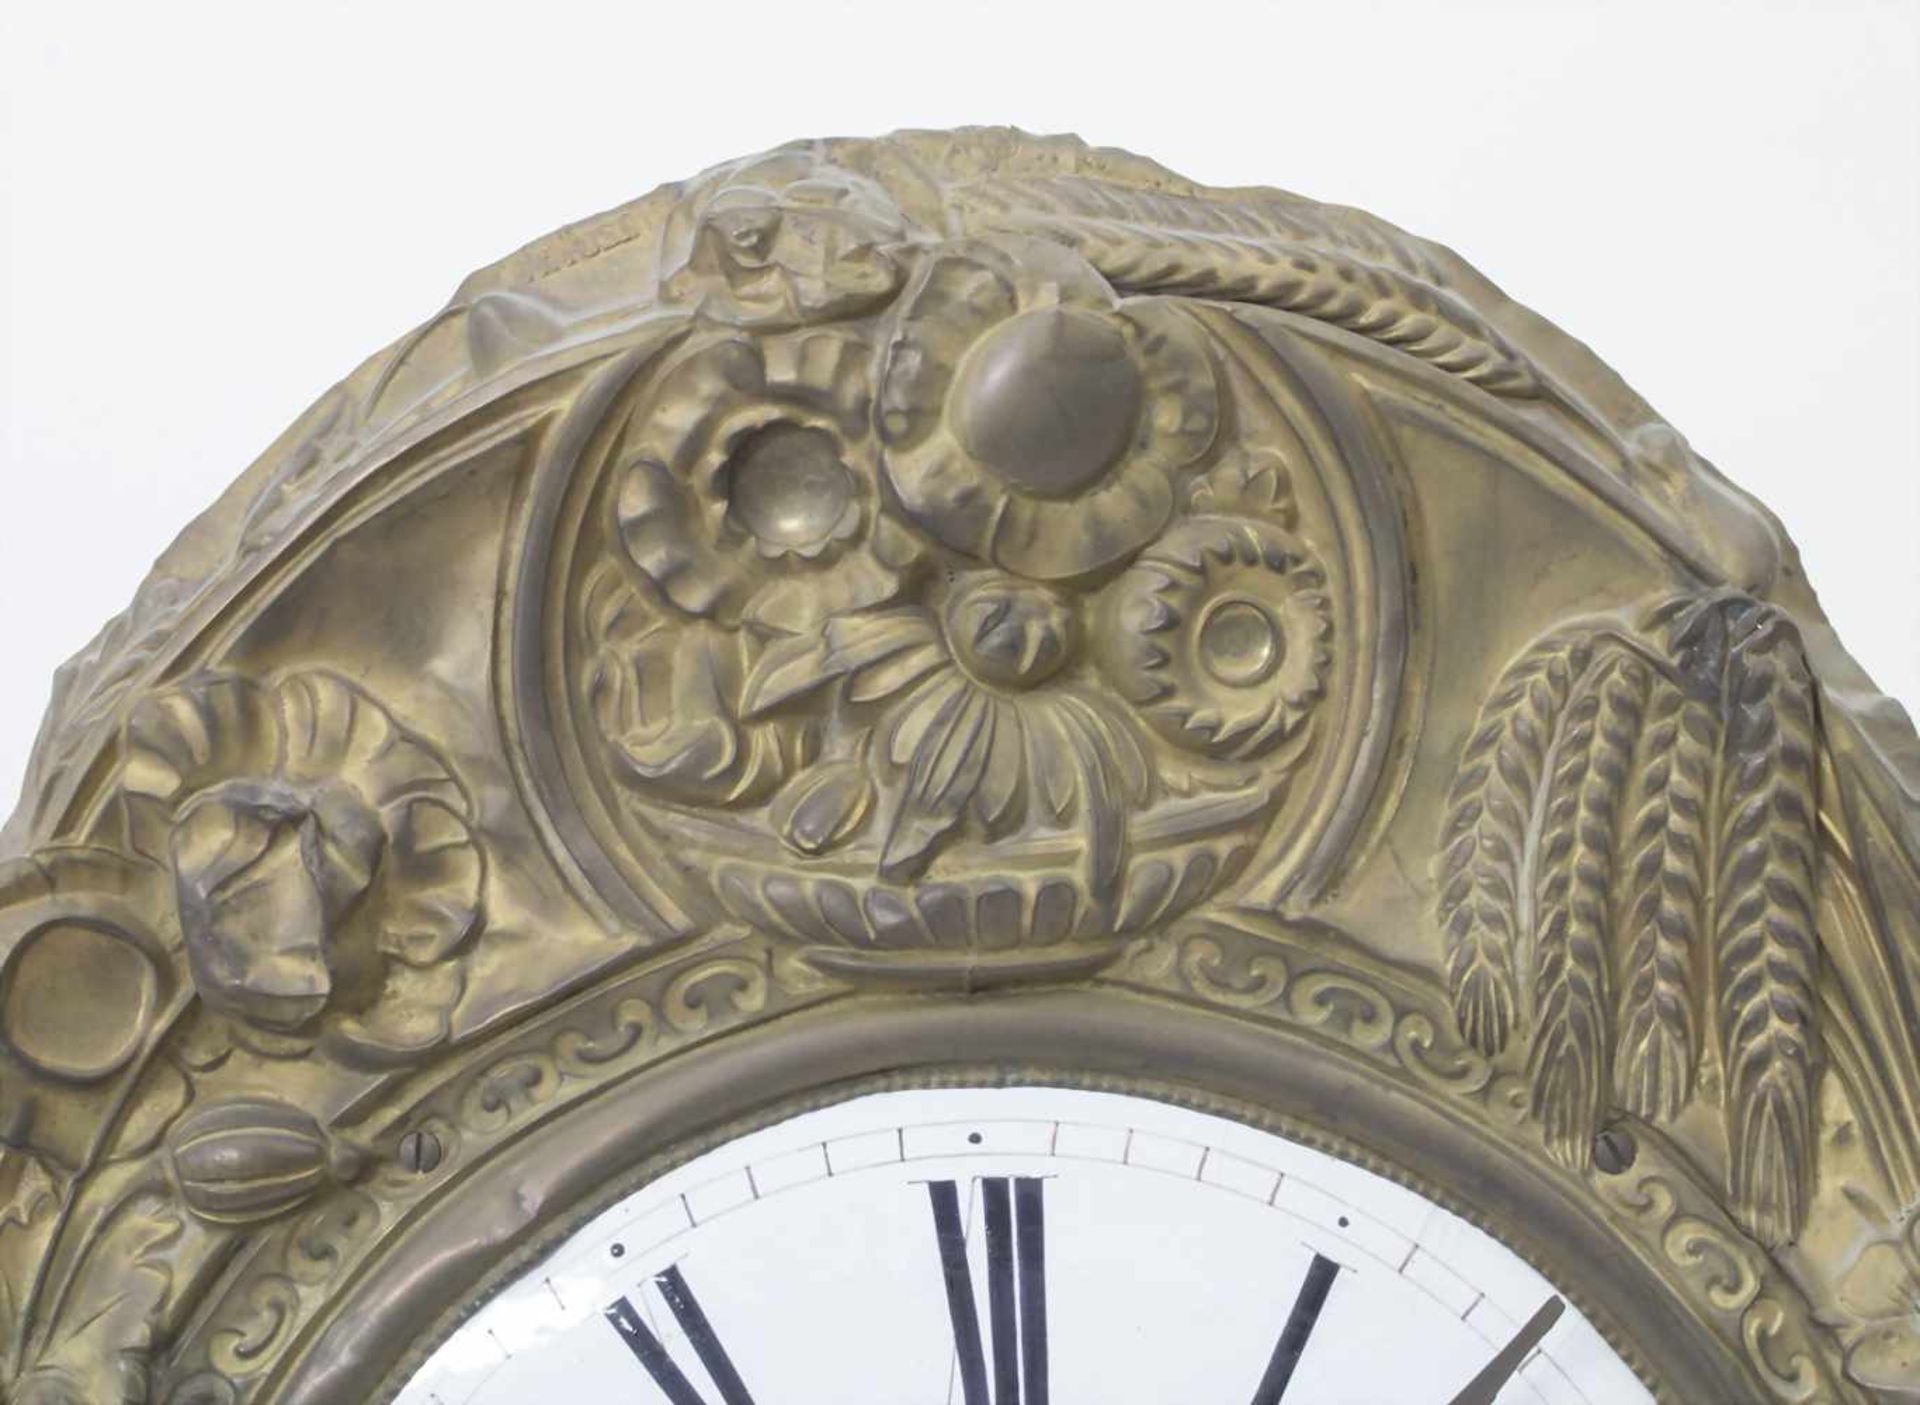 Comtoise/ French Wall Clock, Frankreich, 1. Hälfte 19. Jh.Gehäuse: geprägtes Messingblech,Uhrwerk: - Bild 4 aus 11